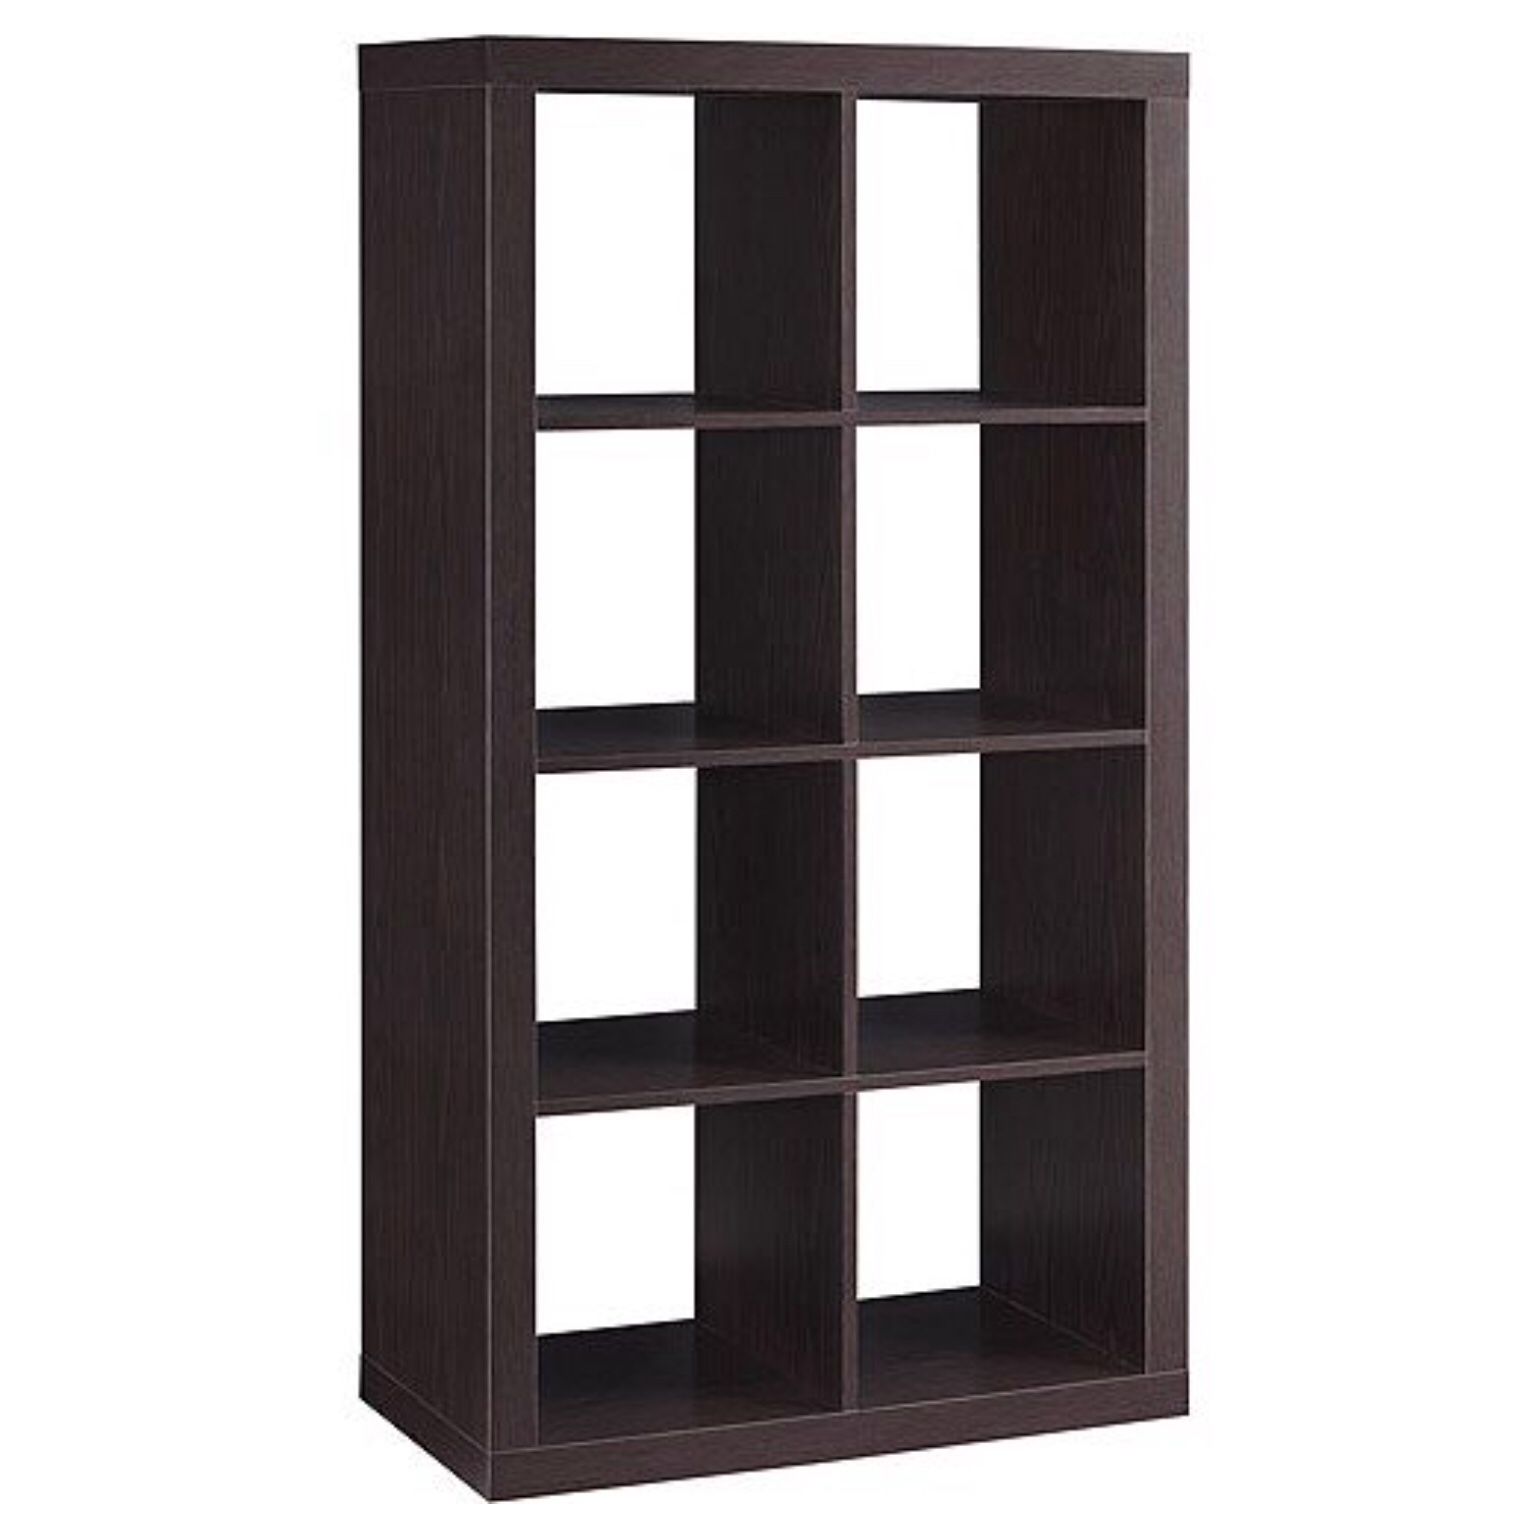 8 cube organizer shelf-$35